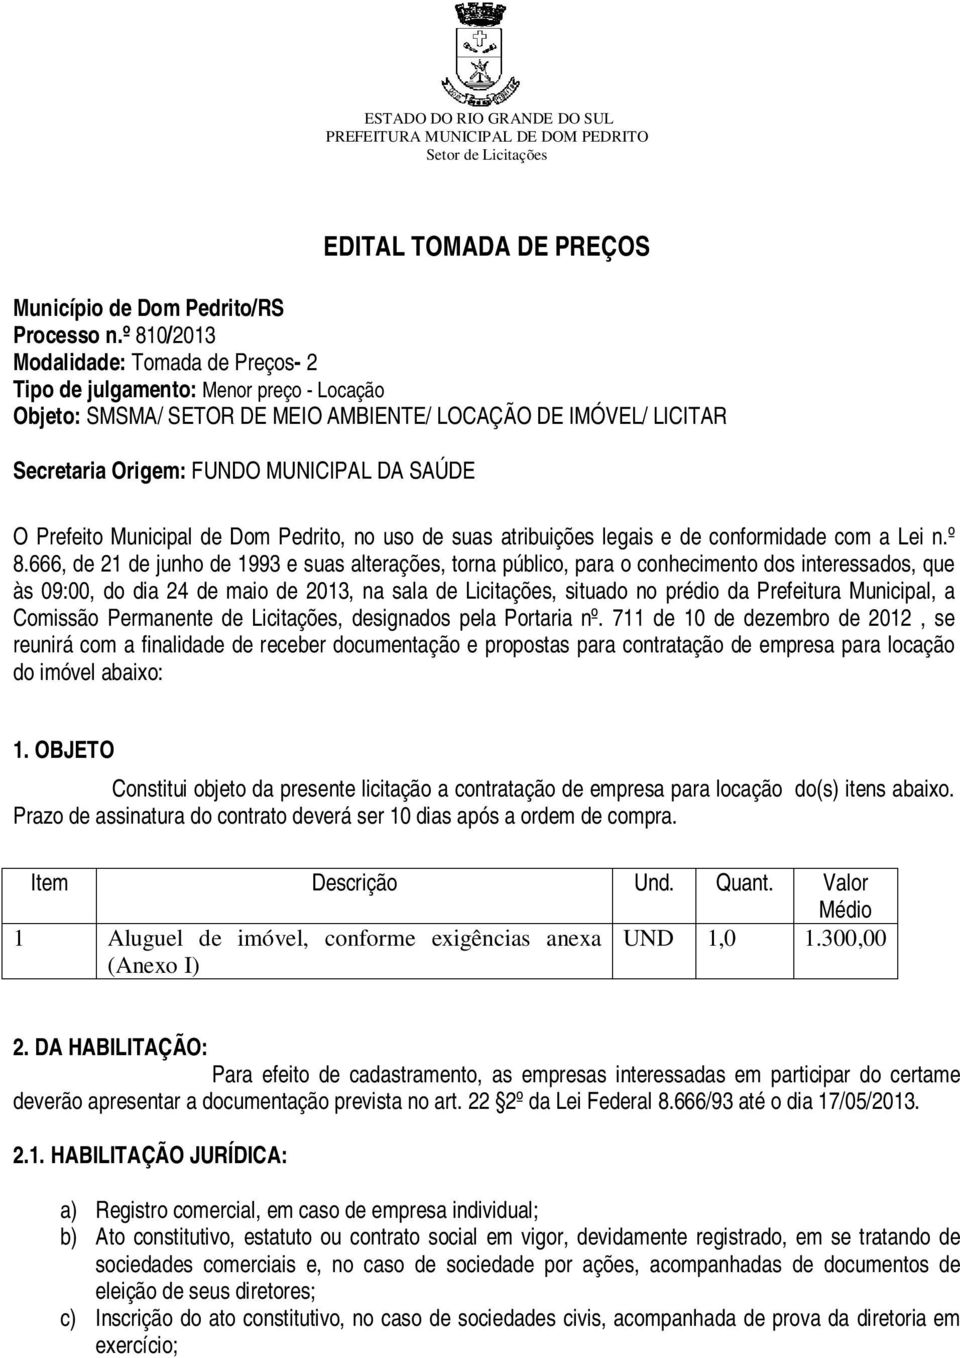 Prefeito Municipal de Dom Pedrito, no uso de suas atribuições legais e de conformidade com a Lei n.º 8.